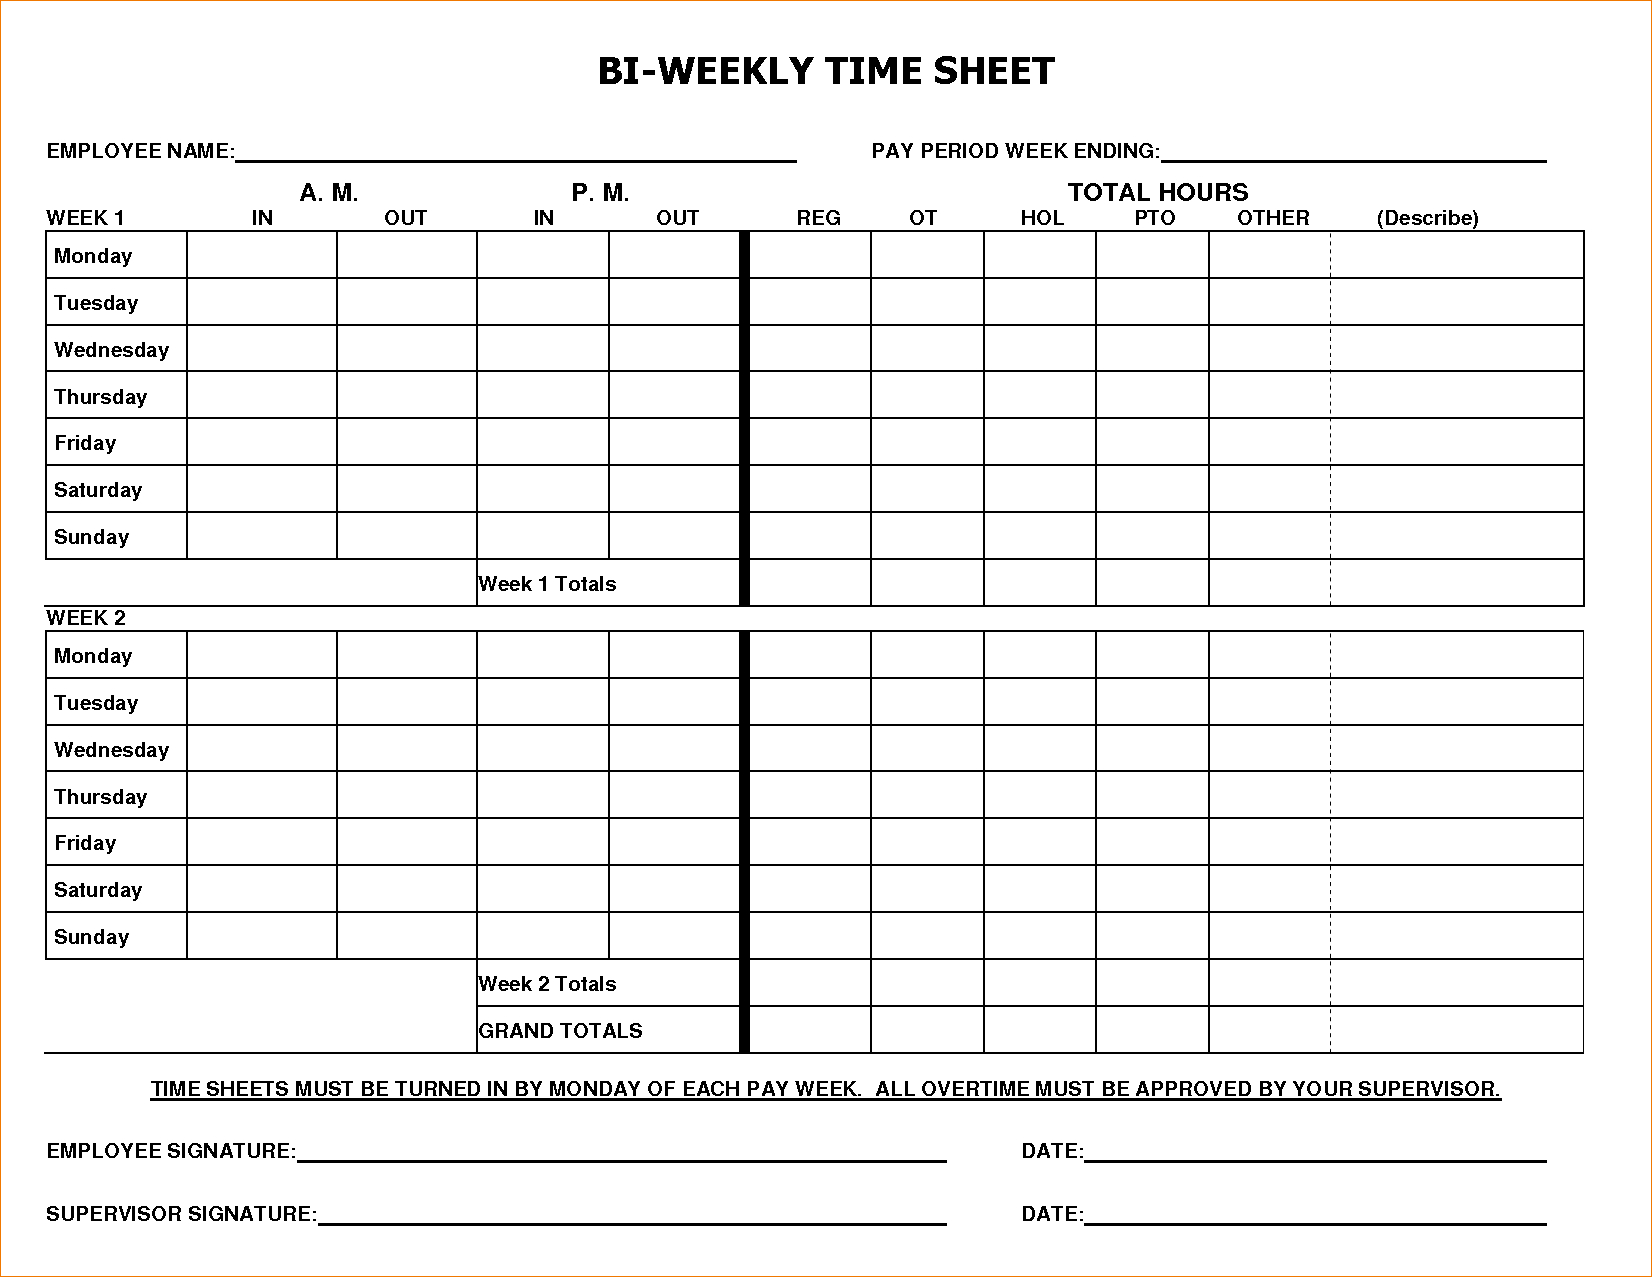 printable-bi-weekly-time-sheets-printable-world-holiday